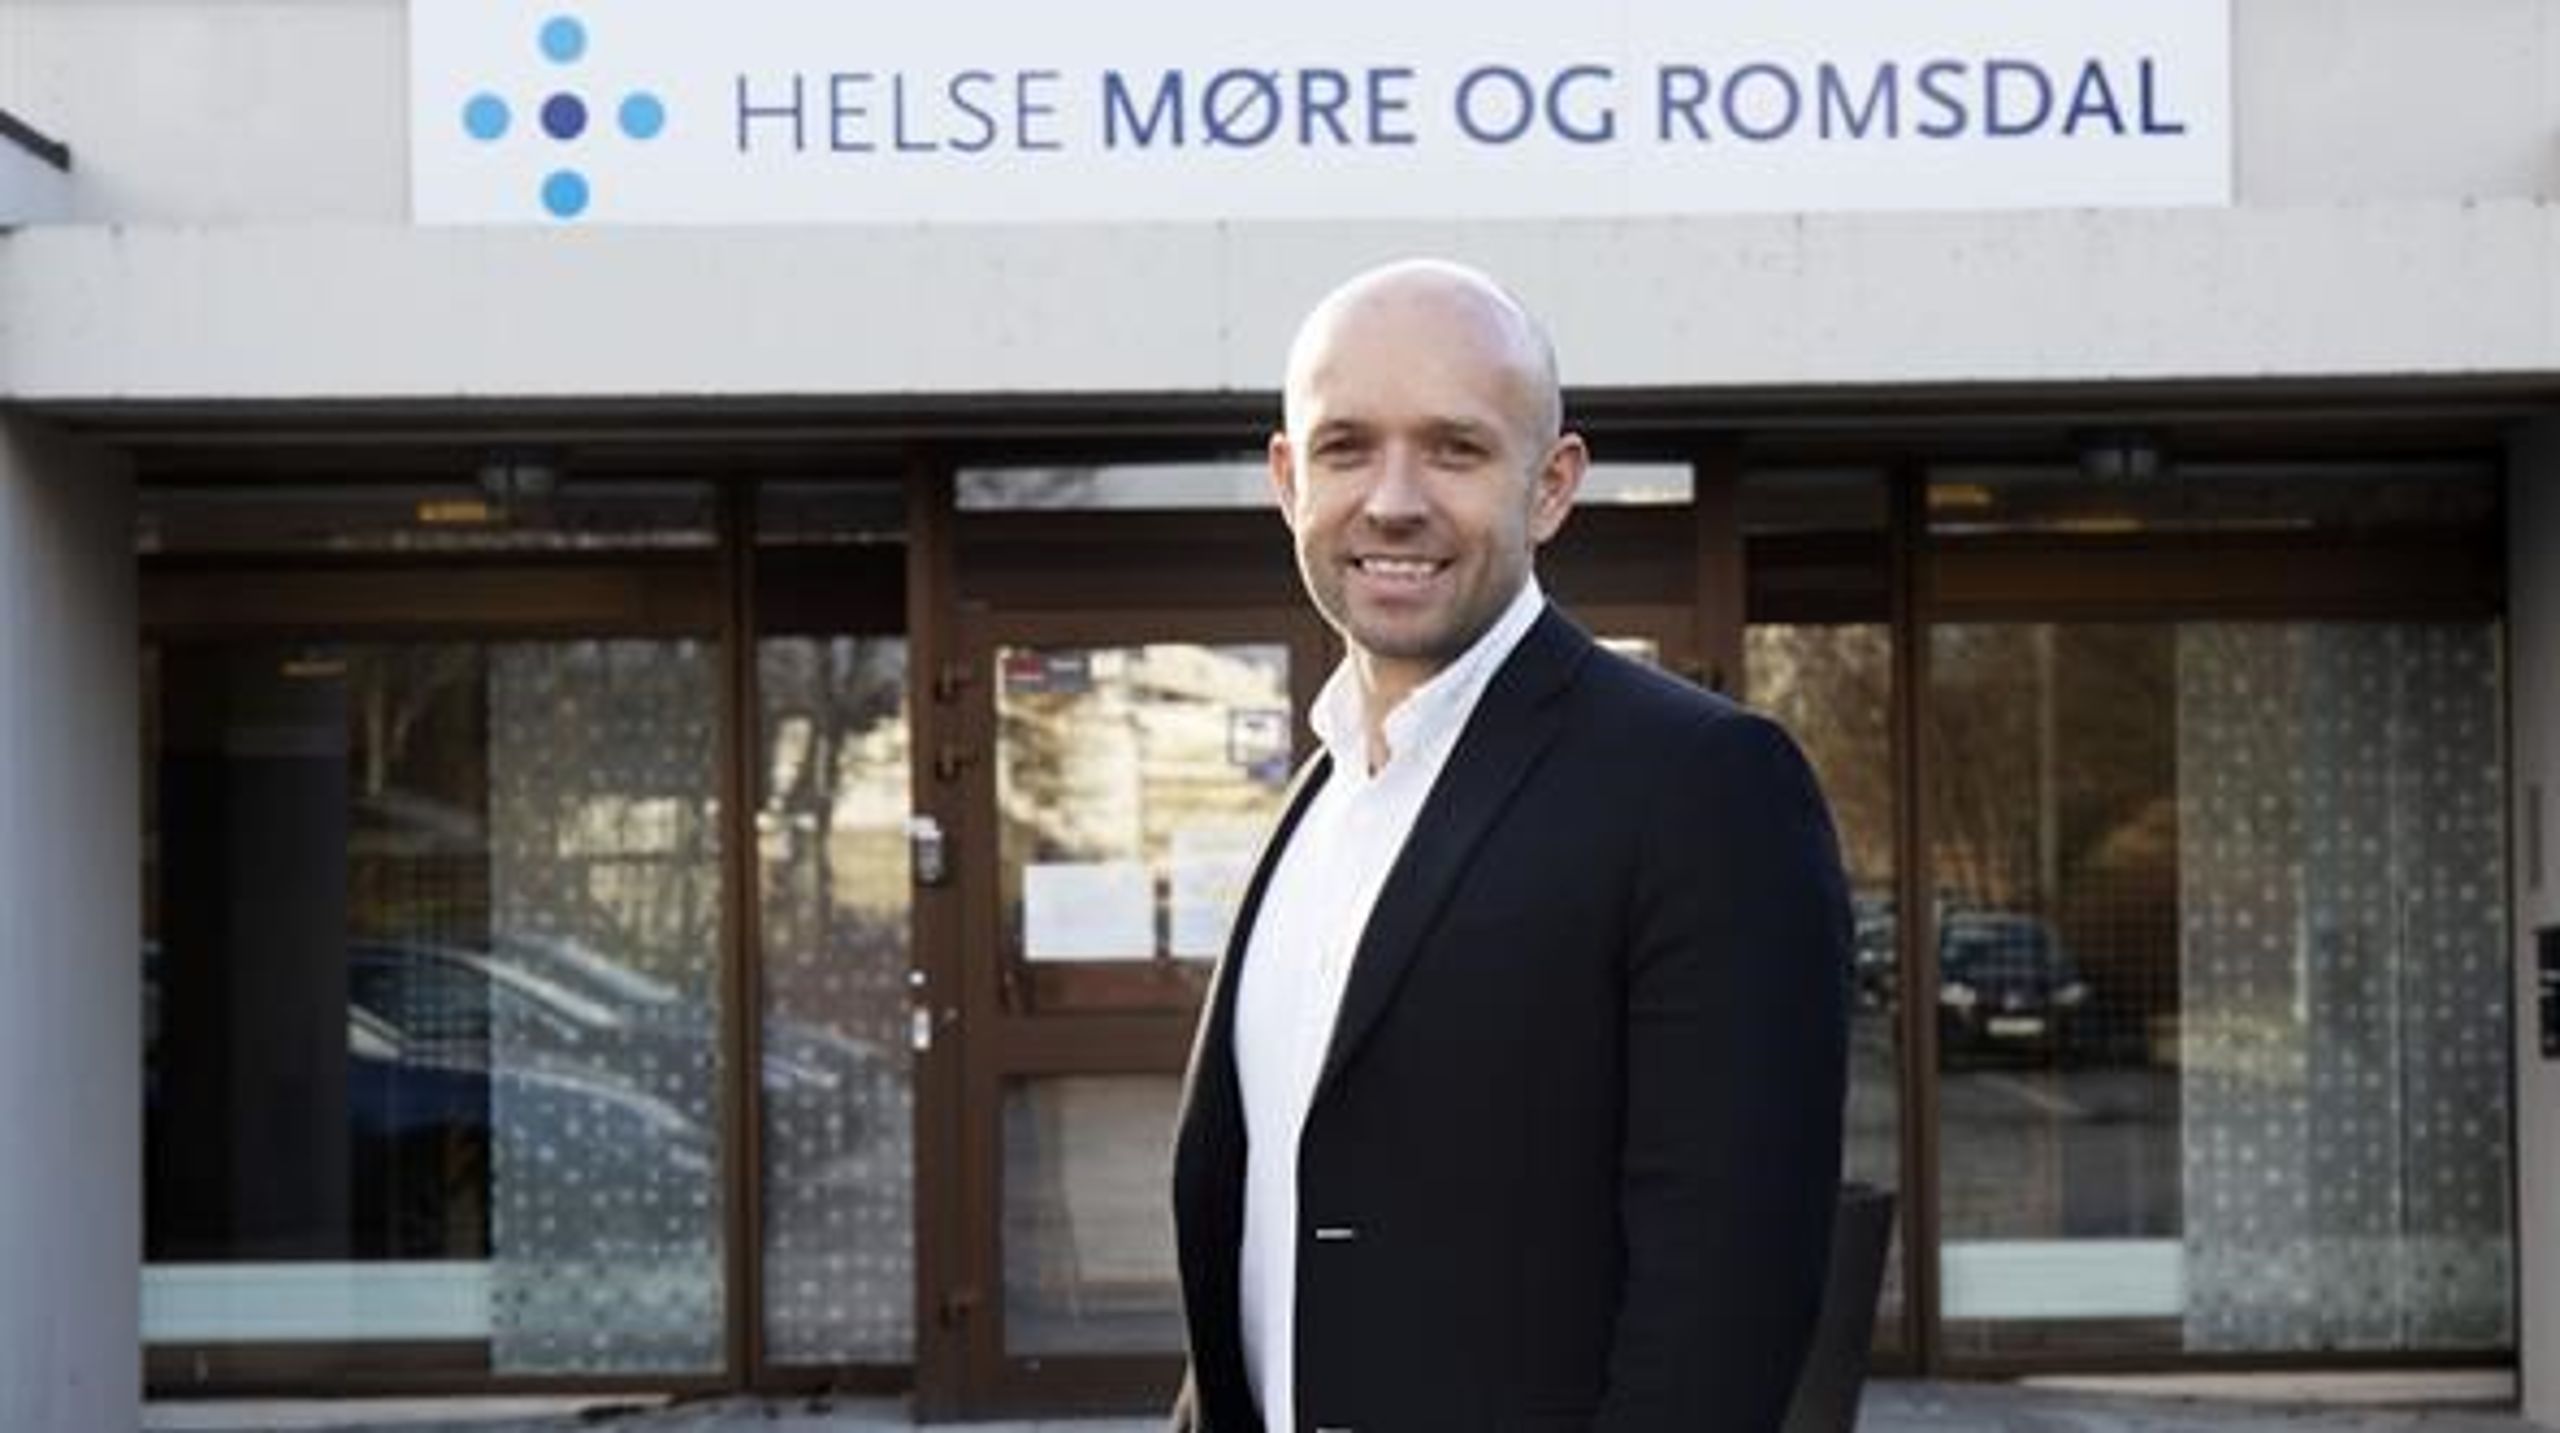 Sykepleier og administrerende direktør for Helse Møre og Romsdal HF, Øyvind Bakke, er kåret til vinner av årets helselederpris.&nbsp;